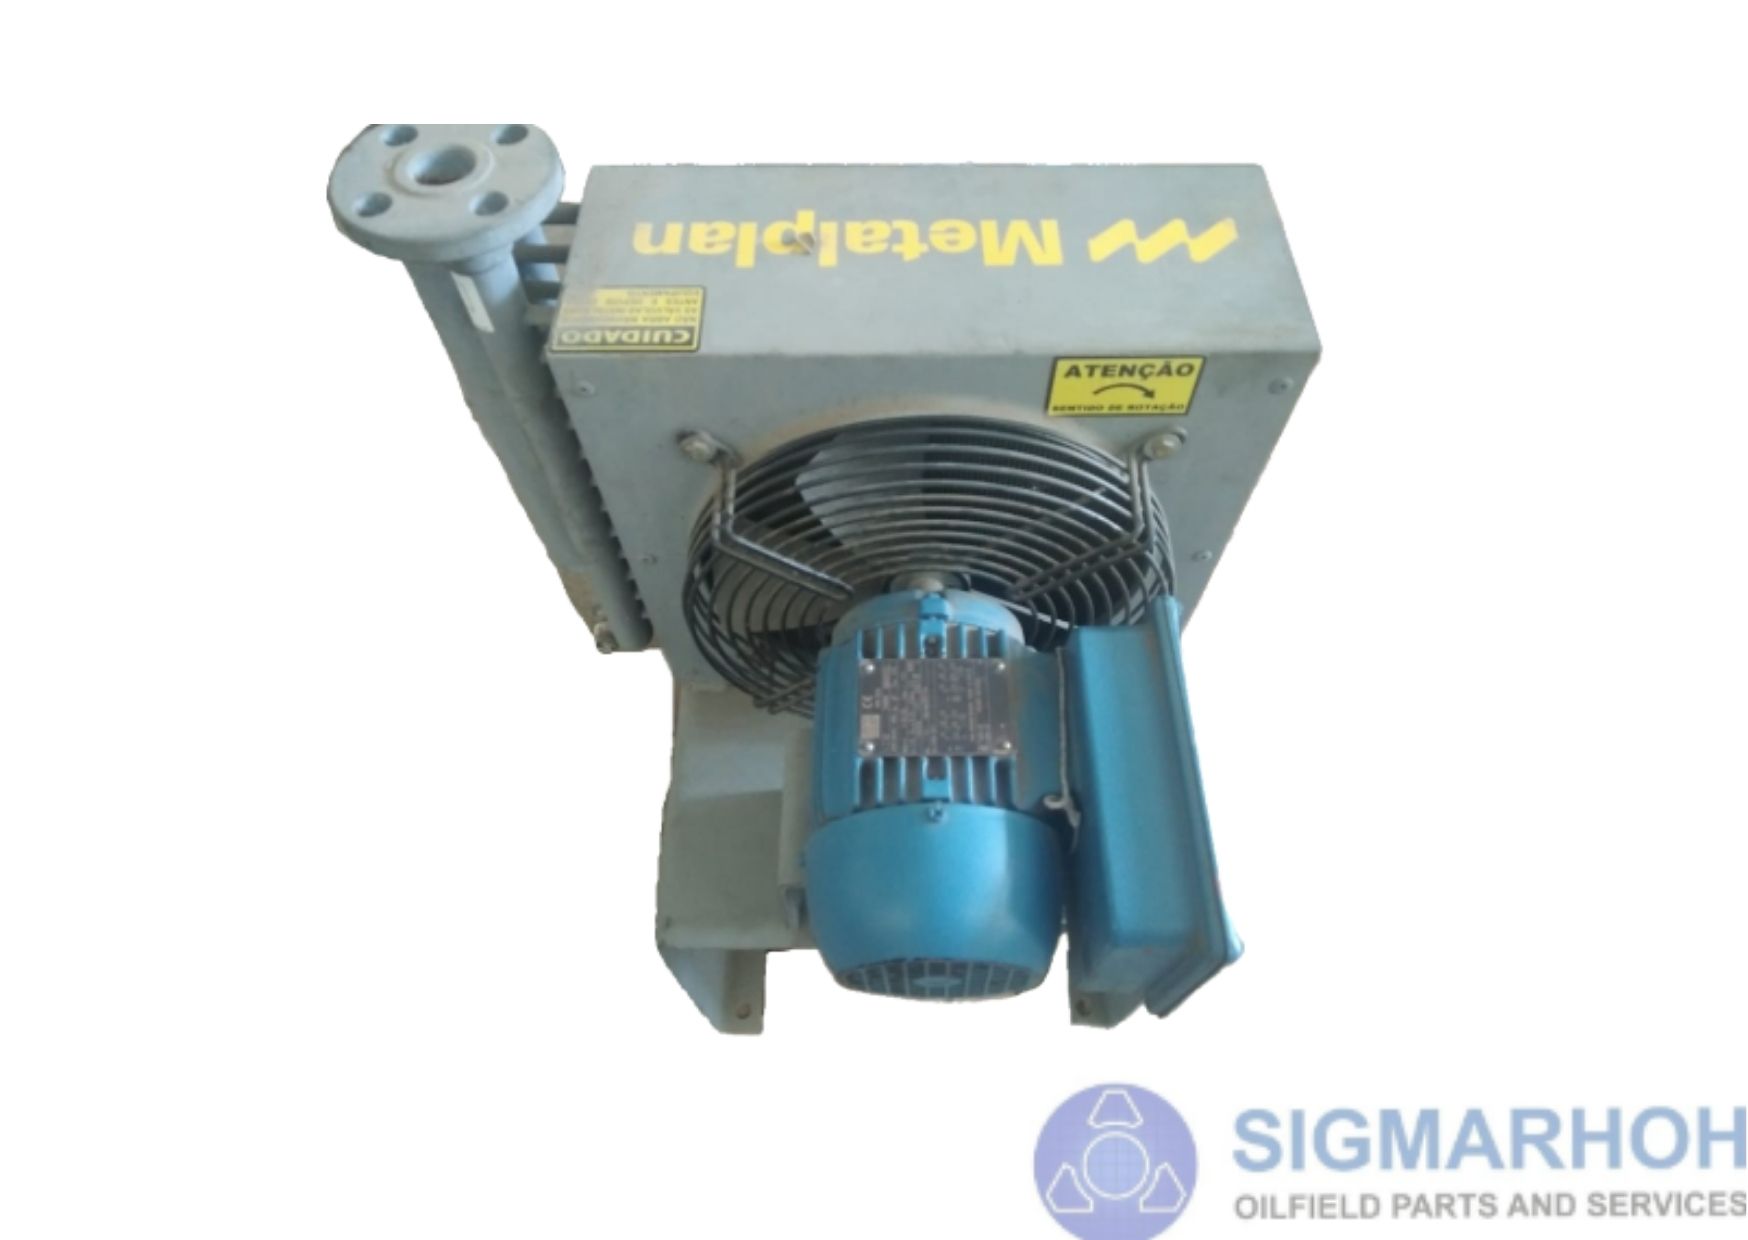 Radiador para Compressor de Ar / Radiator for Air Compressor